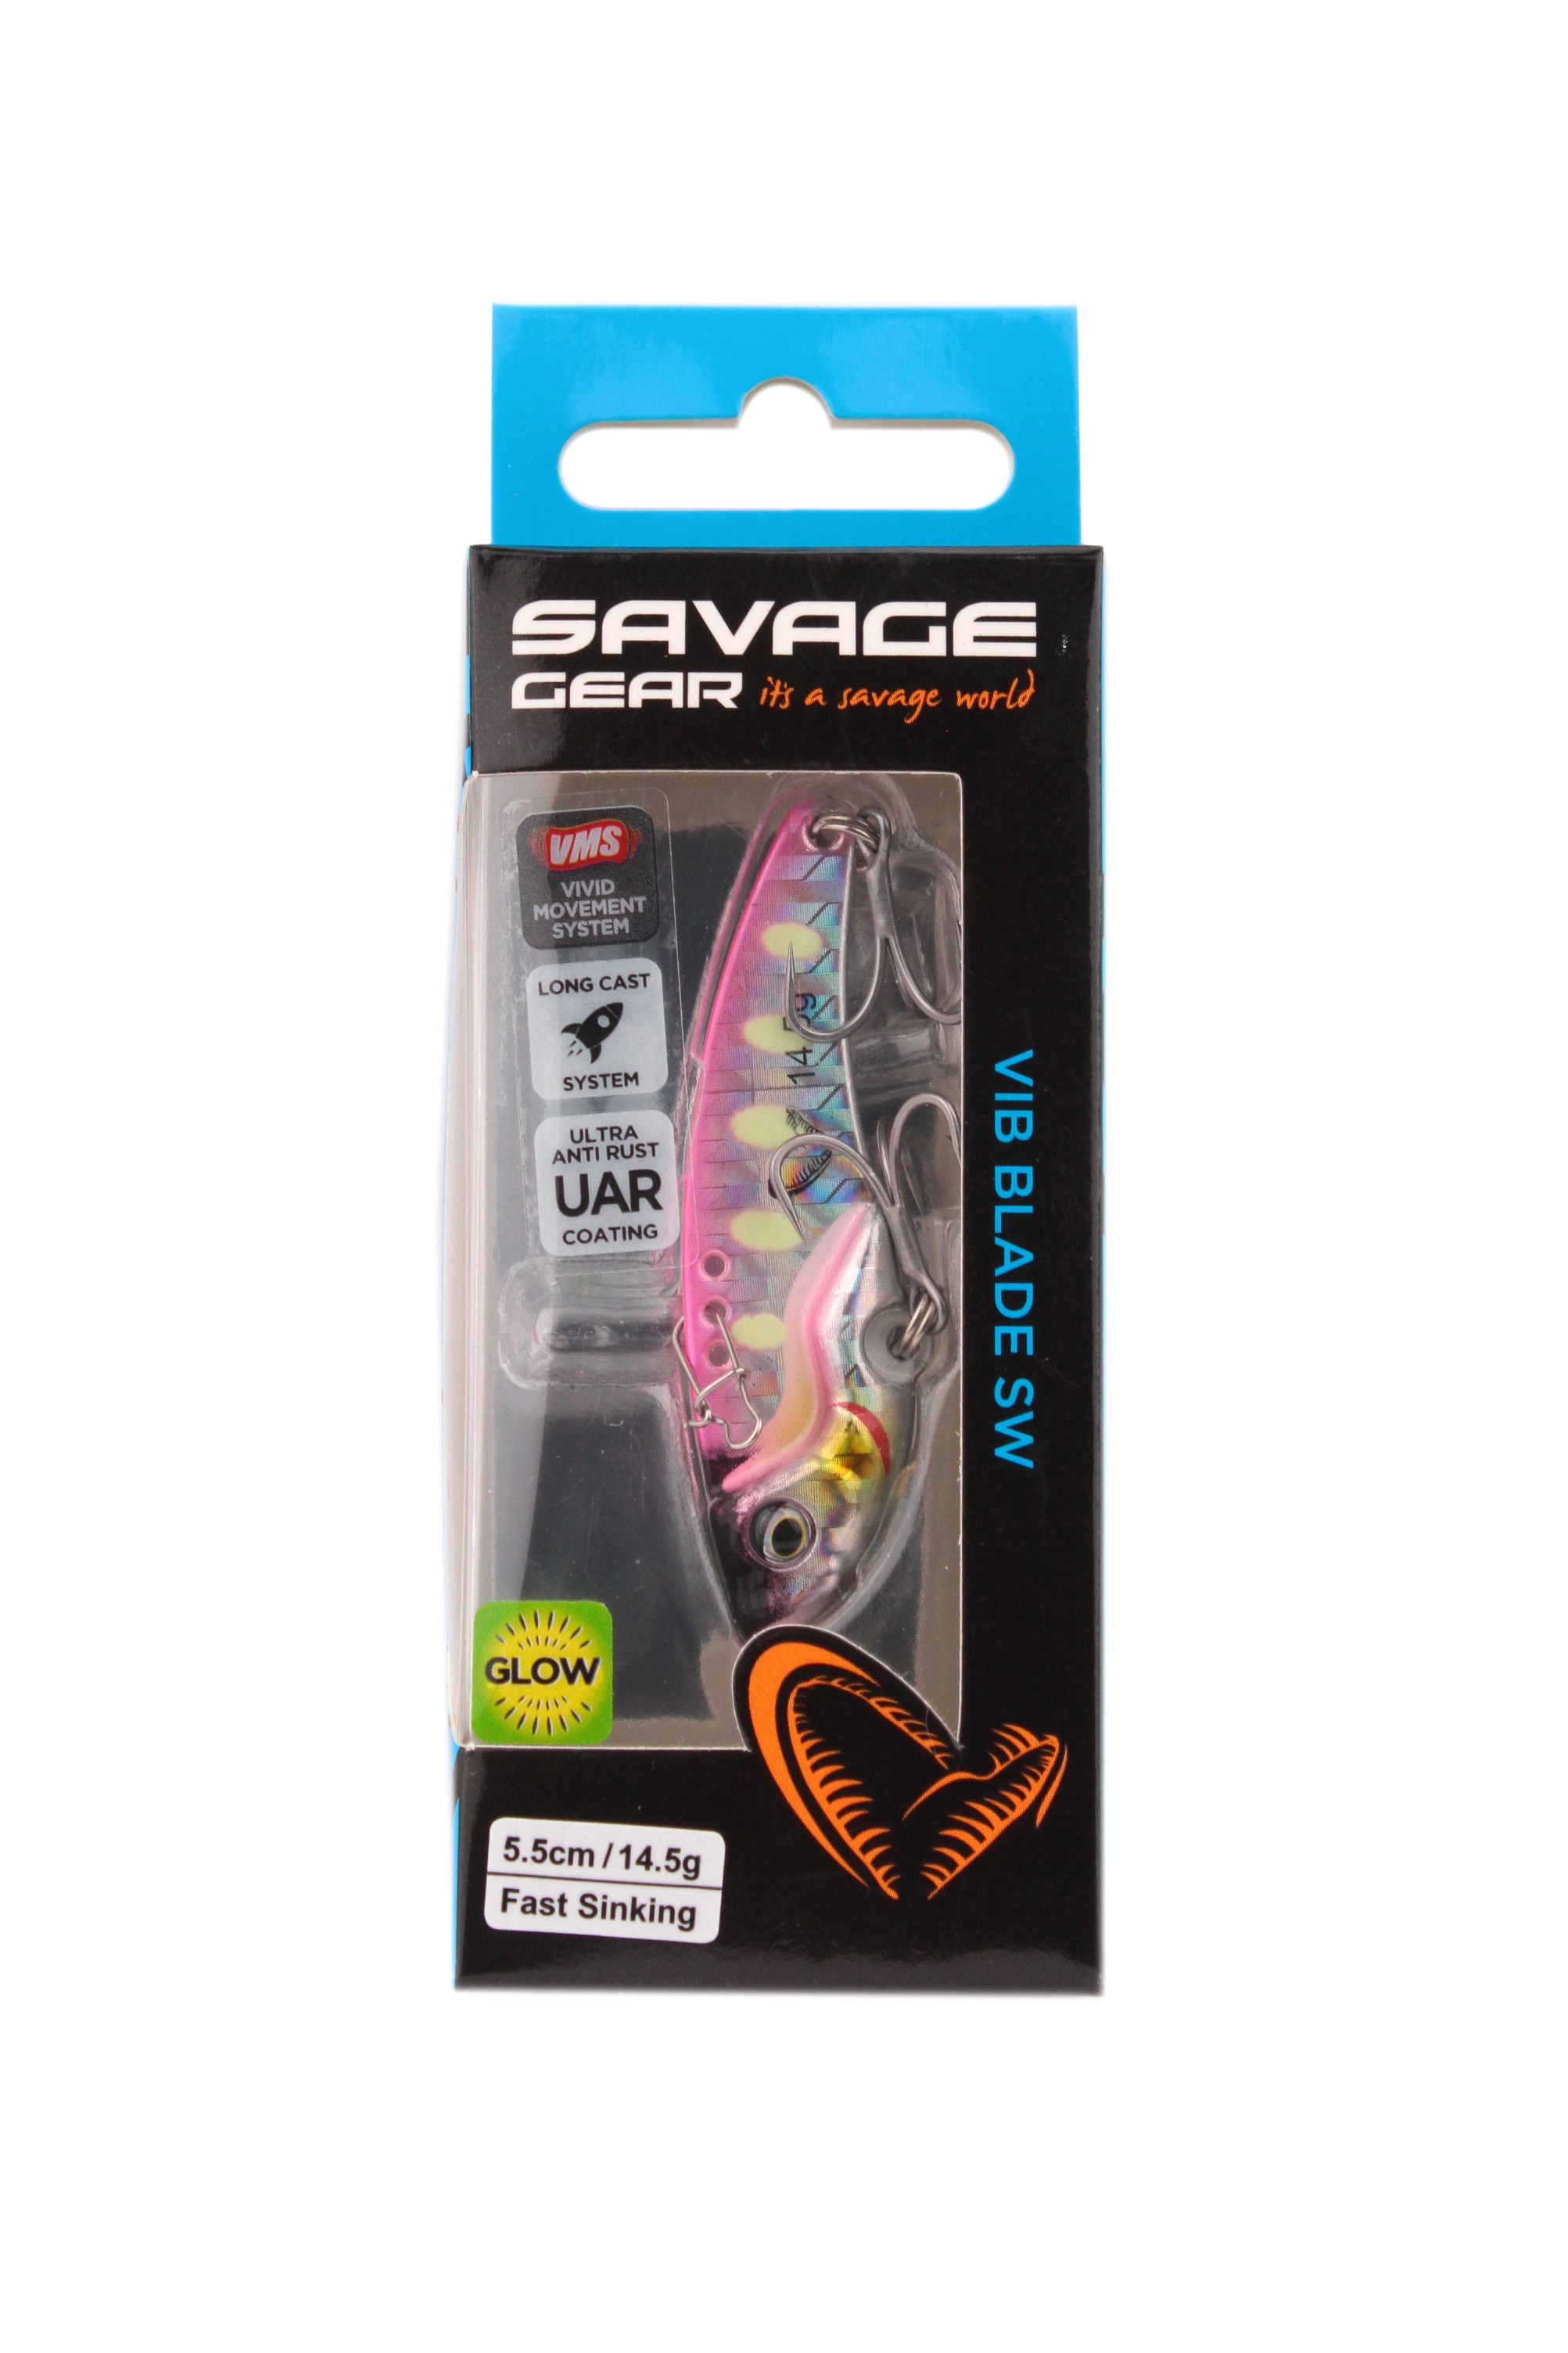 Блесна Savage Gear Vib blade SW 5,5см 14,5гр fast sinking pink glow dot - фото 1